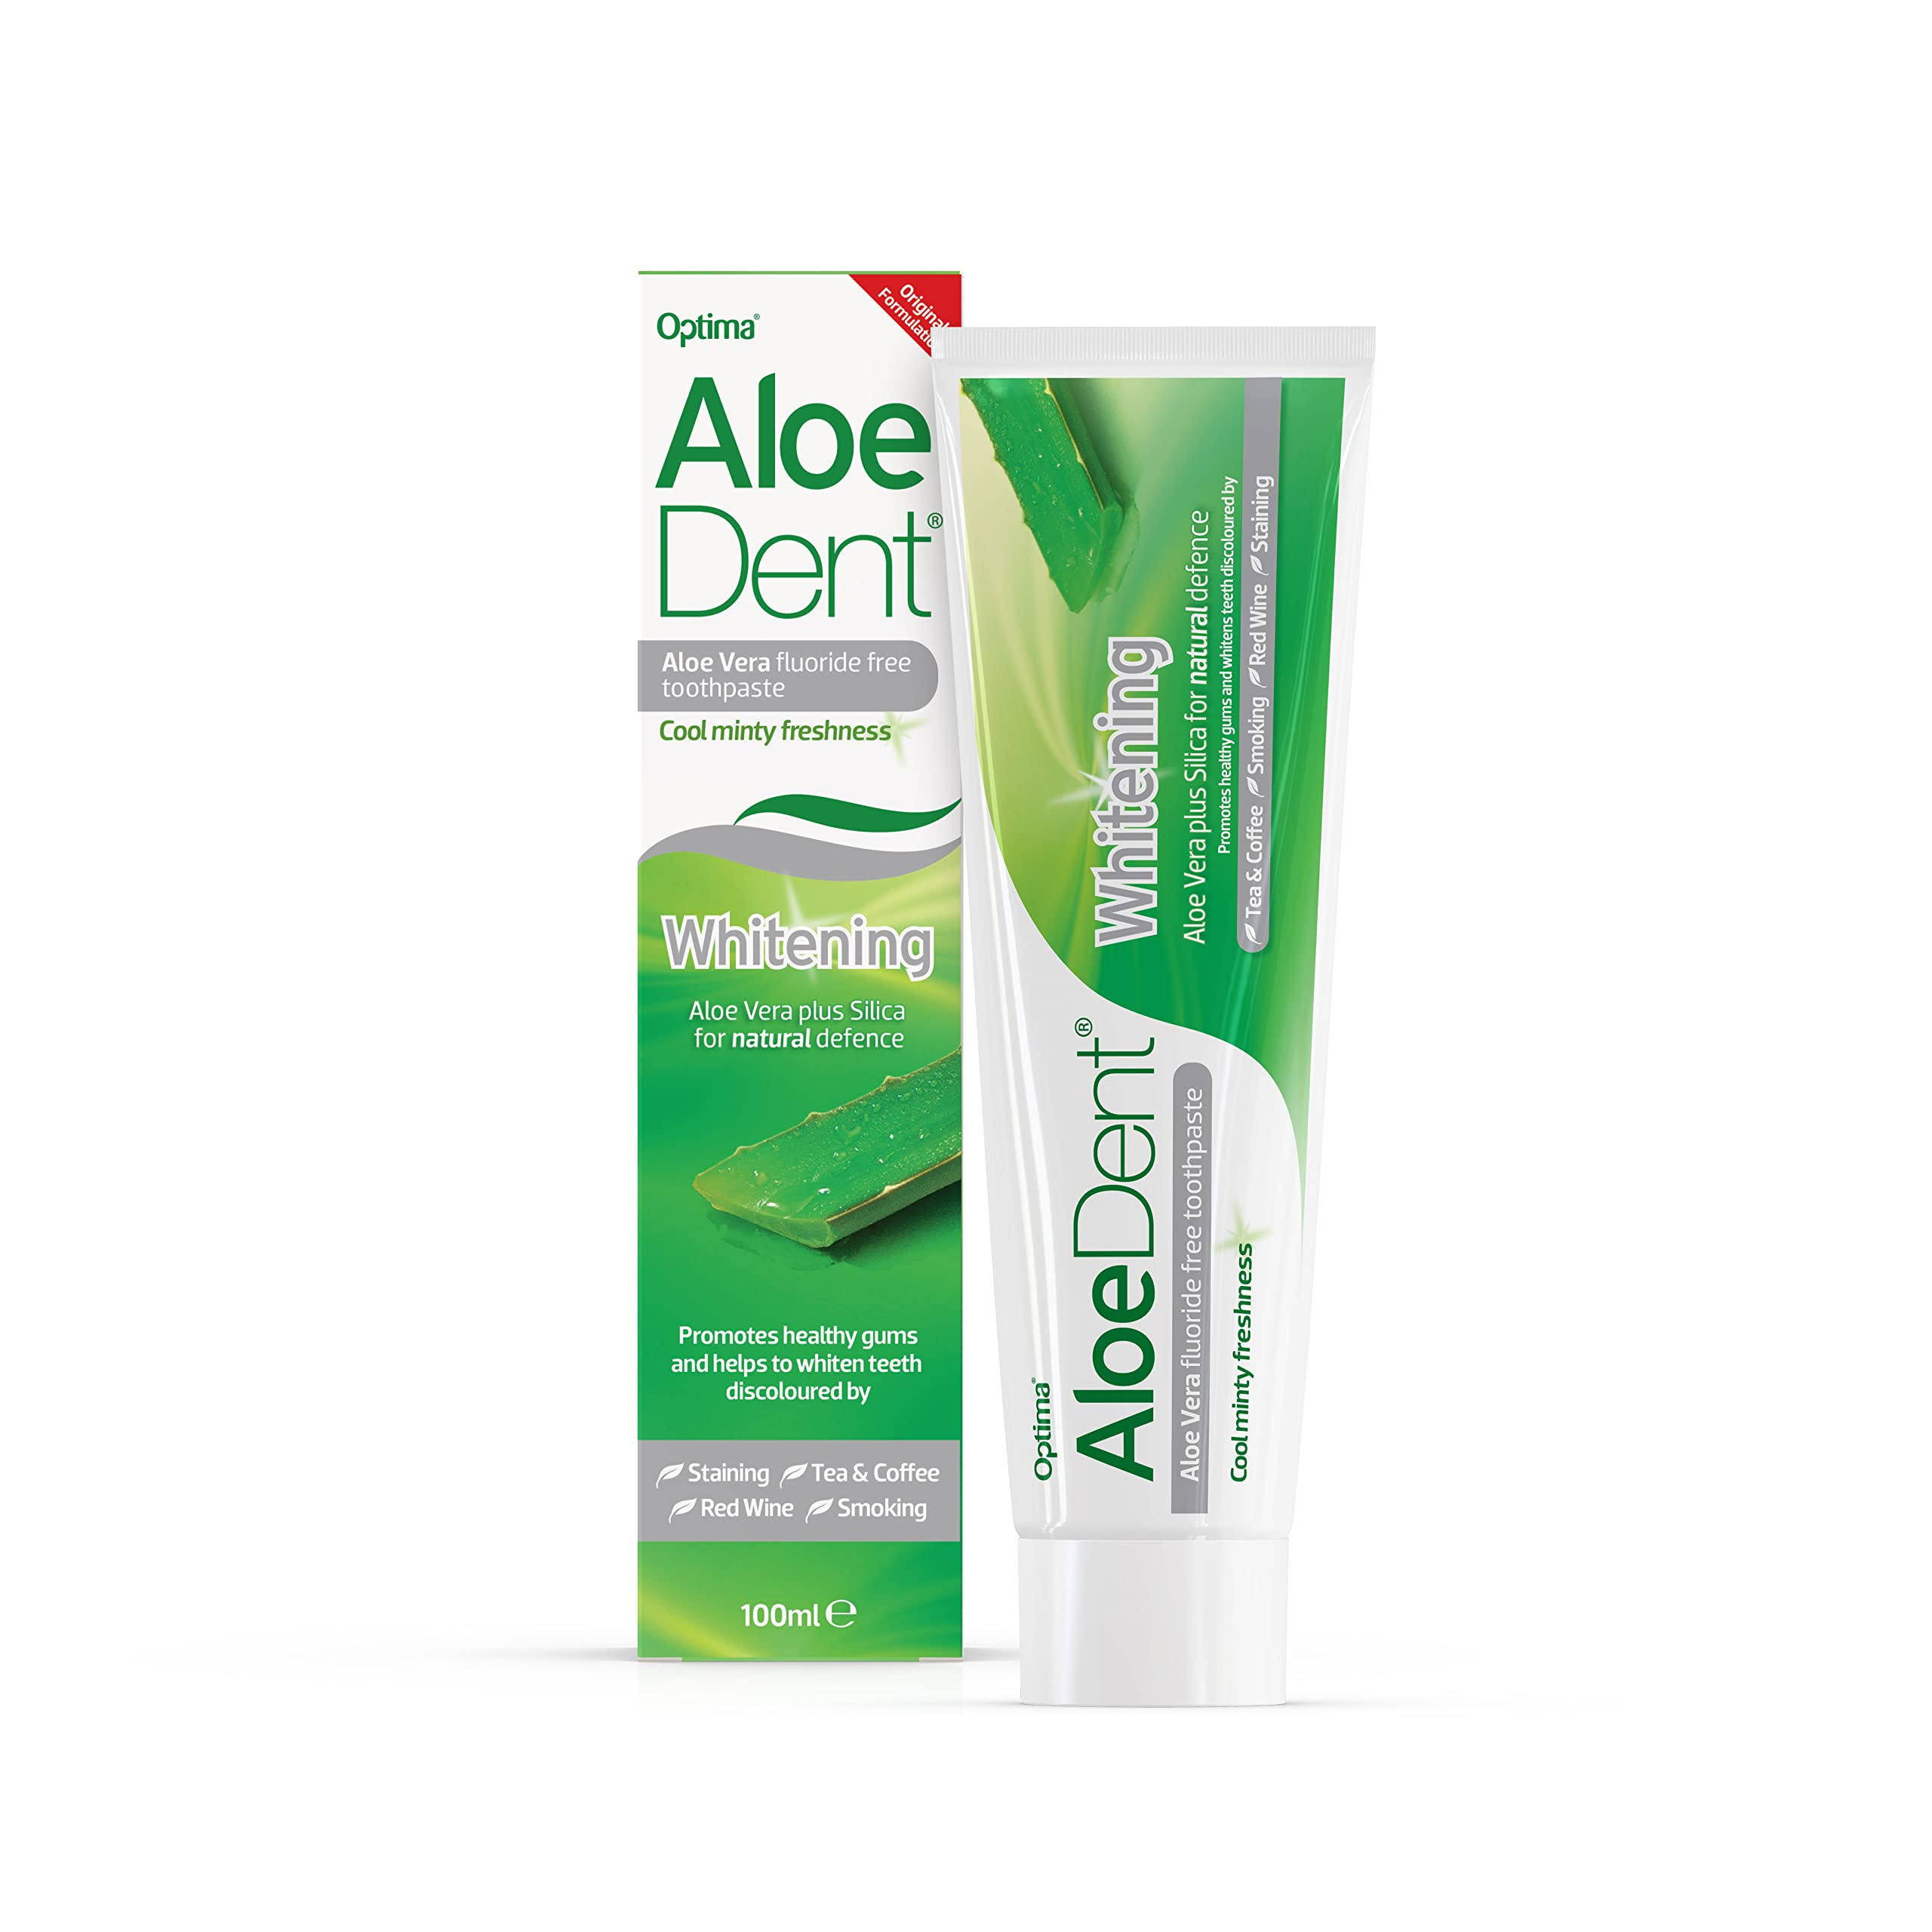 AloeDent Aloe Vera Fluoride Free Toothpaste - Whitening, 100ml